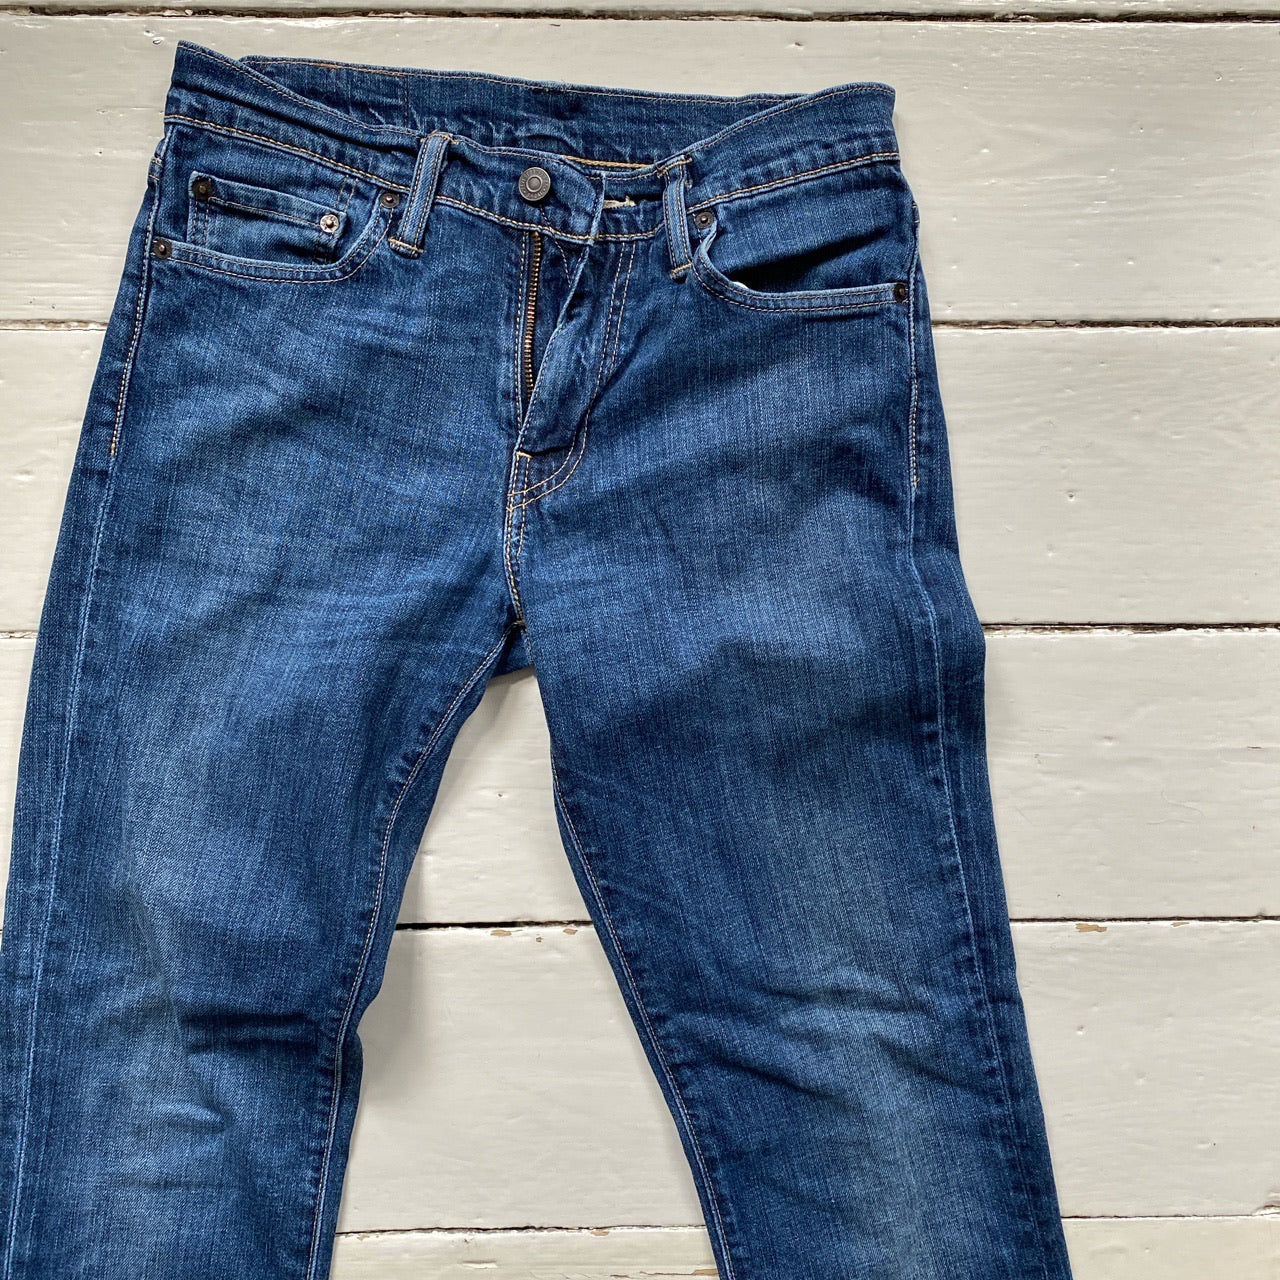 Levis 511 Blue Jeans (30/32)